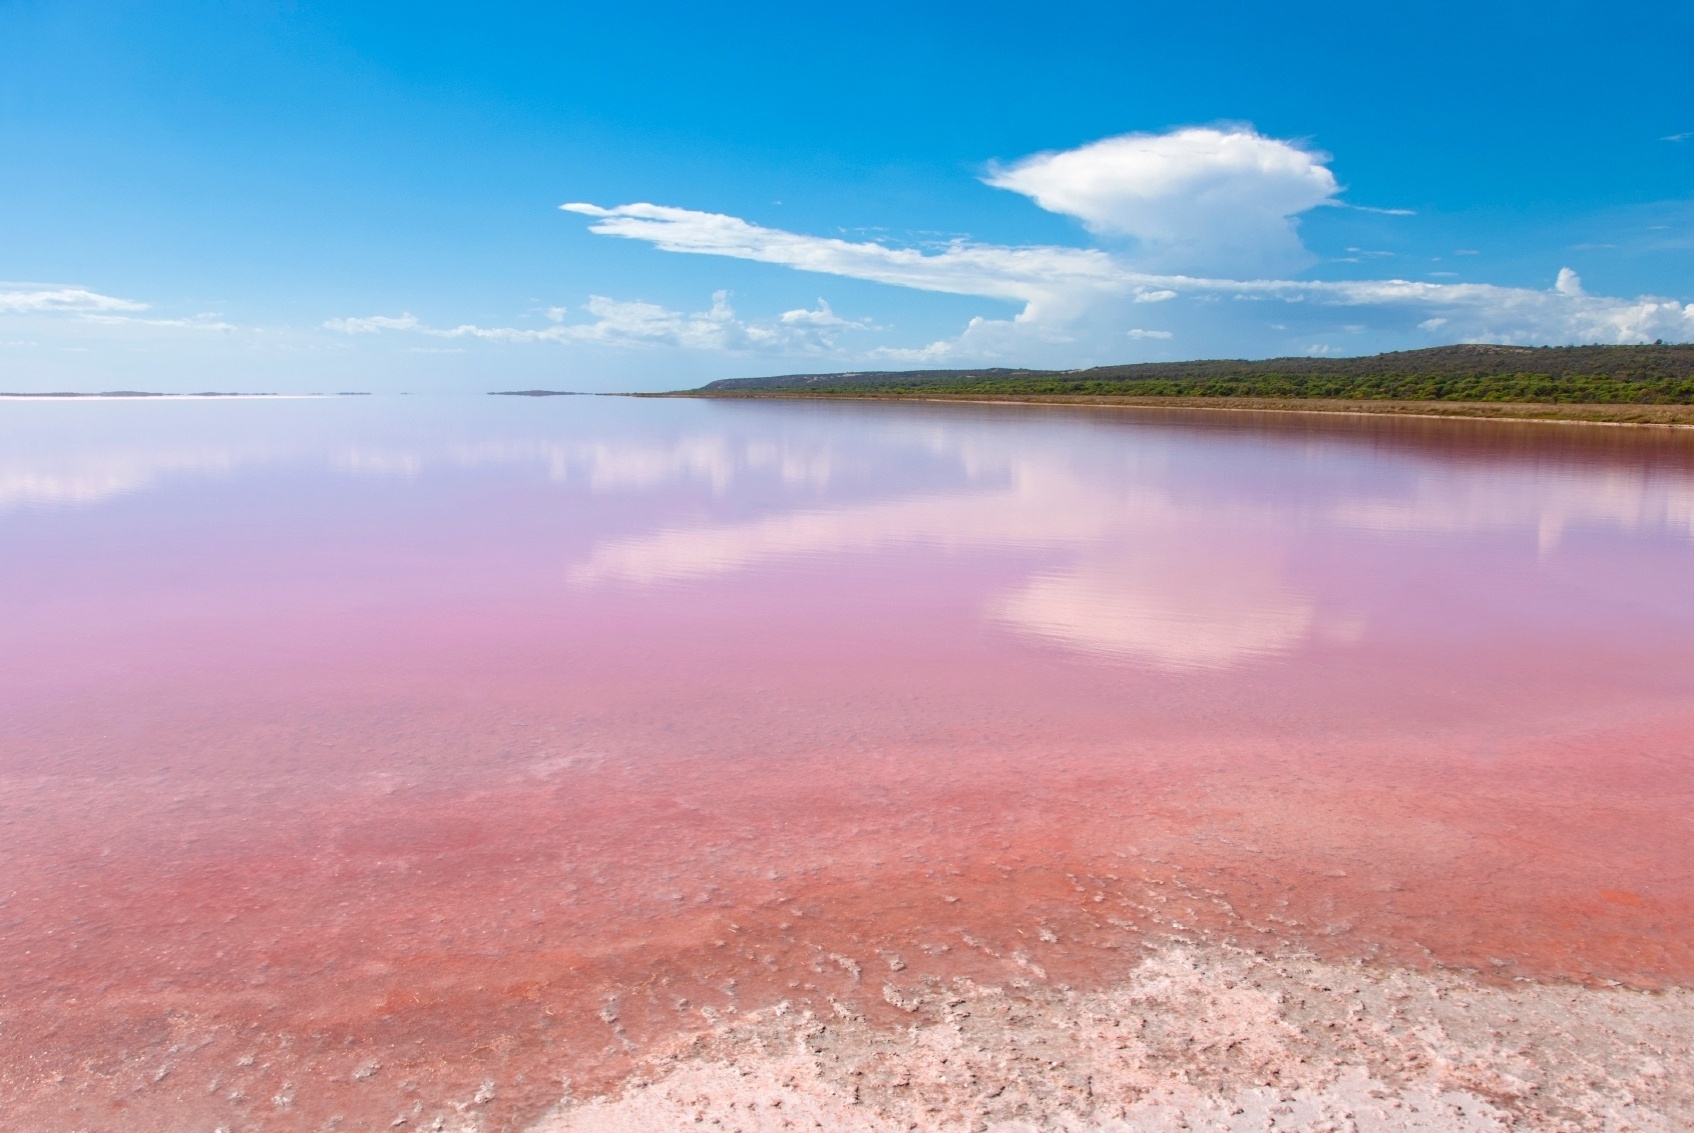 Fotos Ilha Exótica Da Austrália Abriga Um Lago Cor De Rosa Conheça A